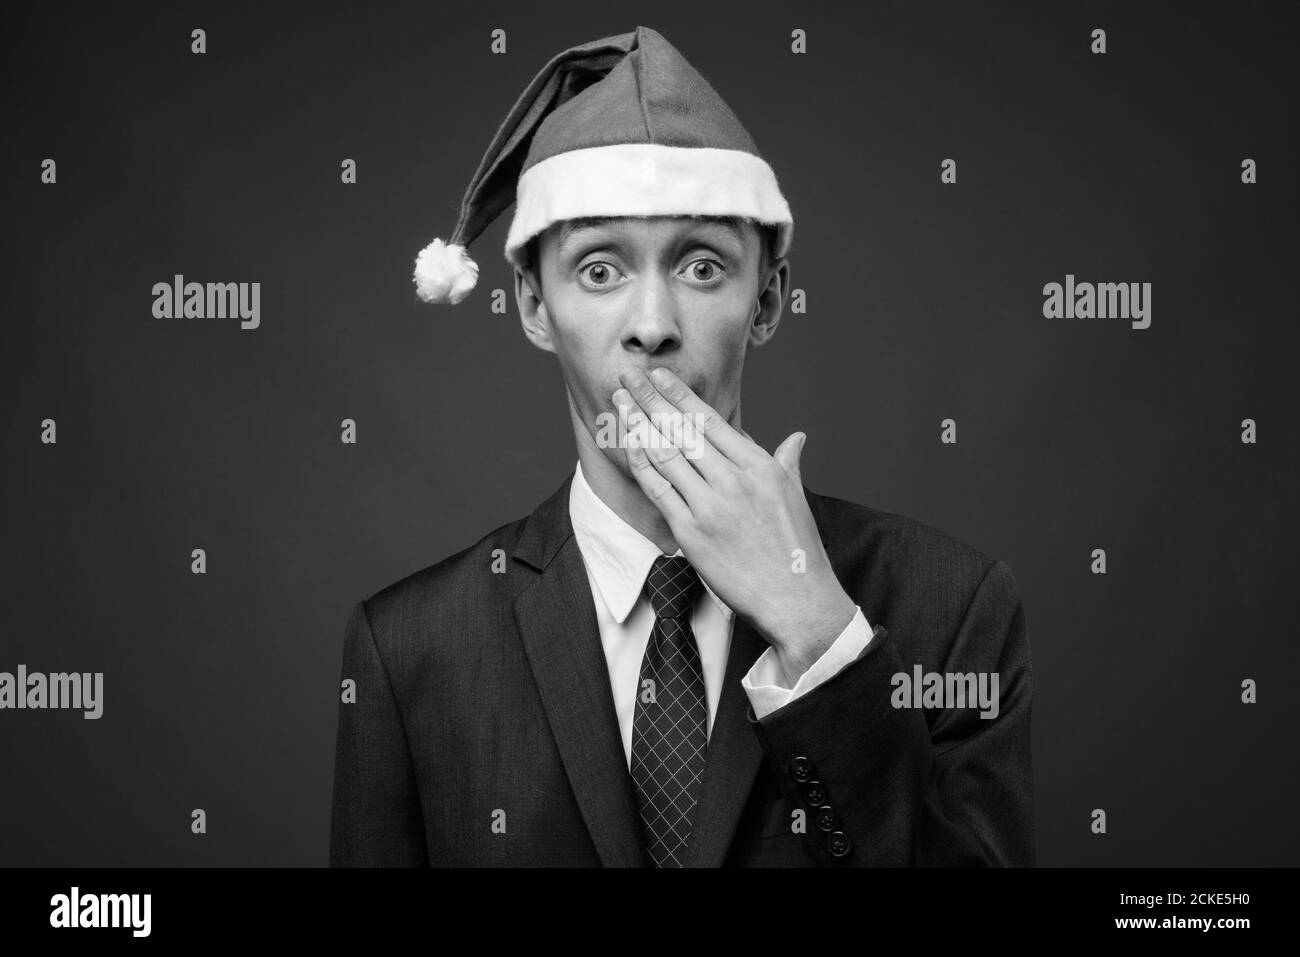 Portrait de jeune homme d'affaires avec chapeau de père Noël prêt pour Noël Banque D'Images